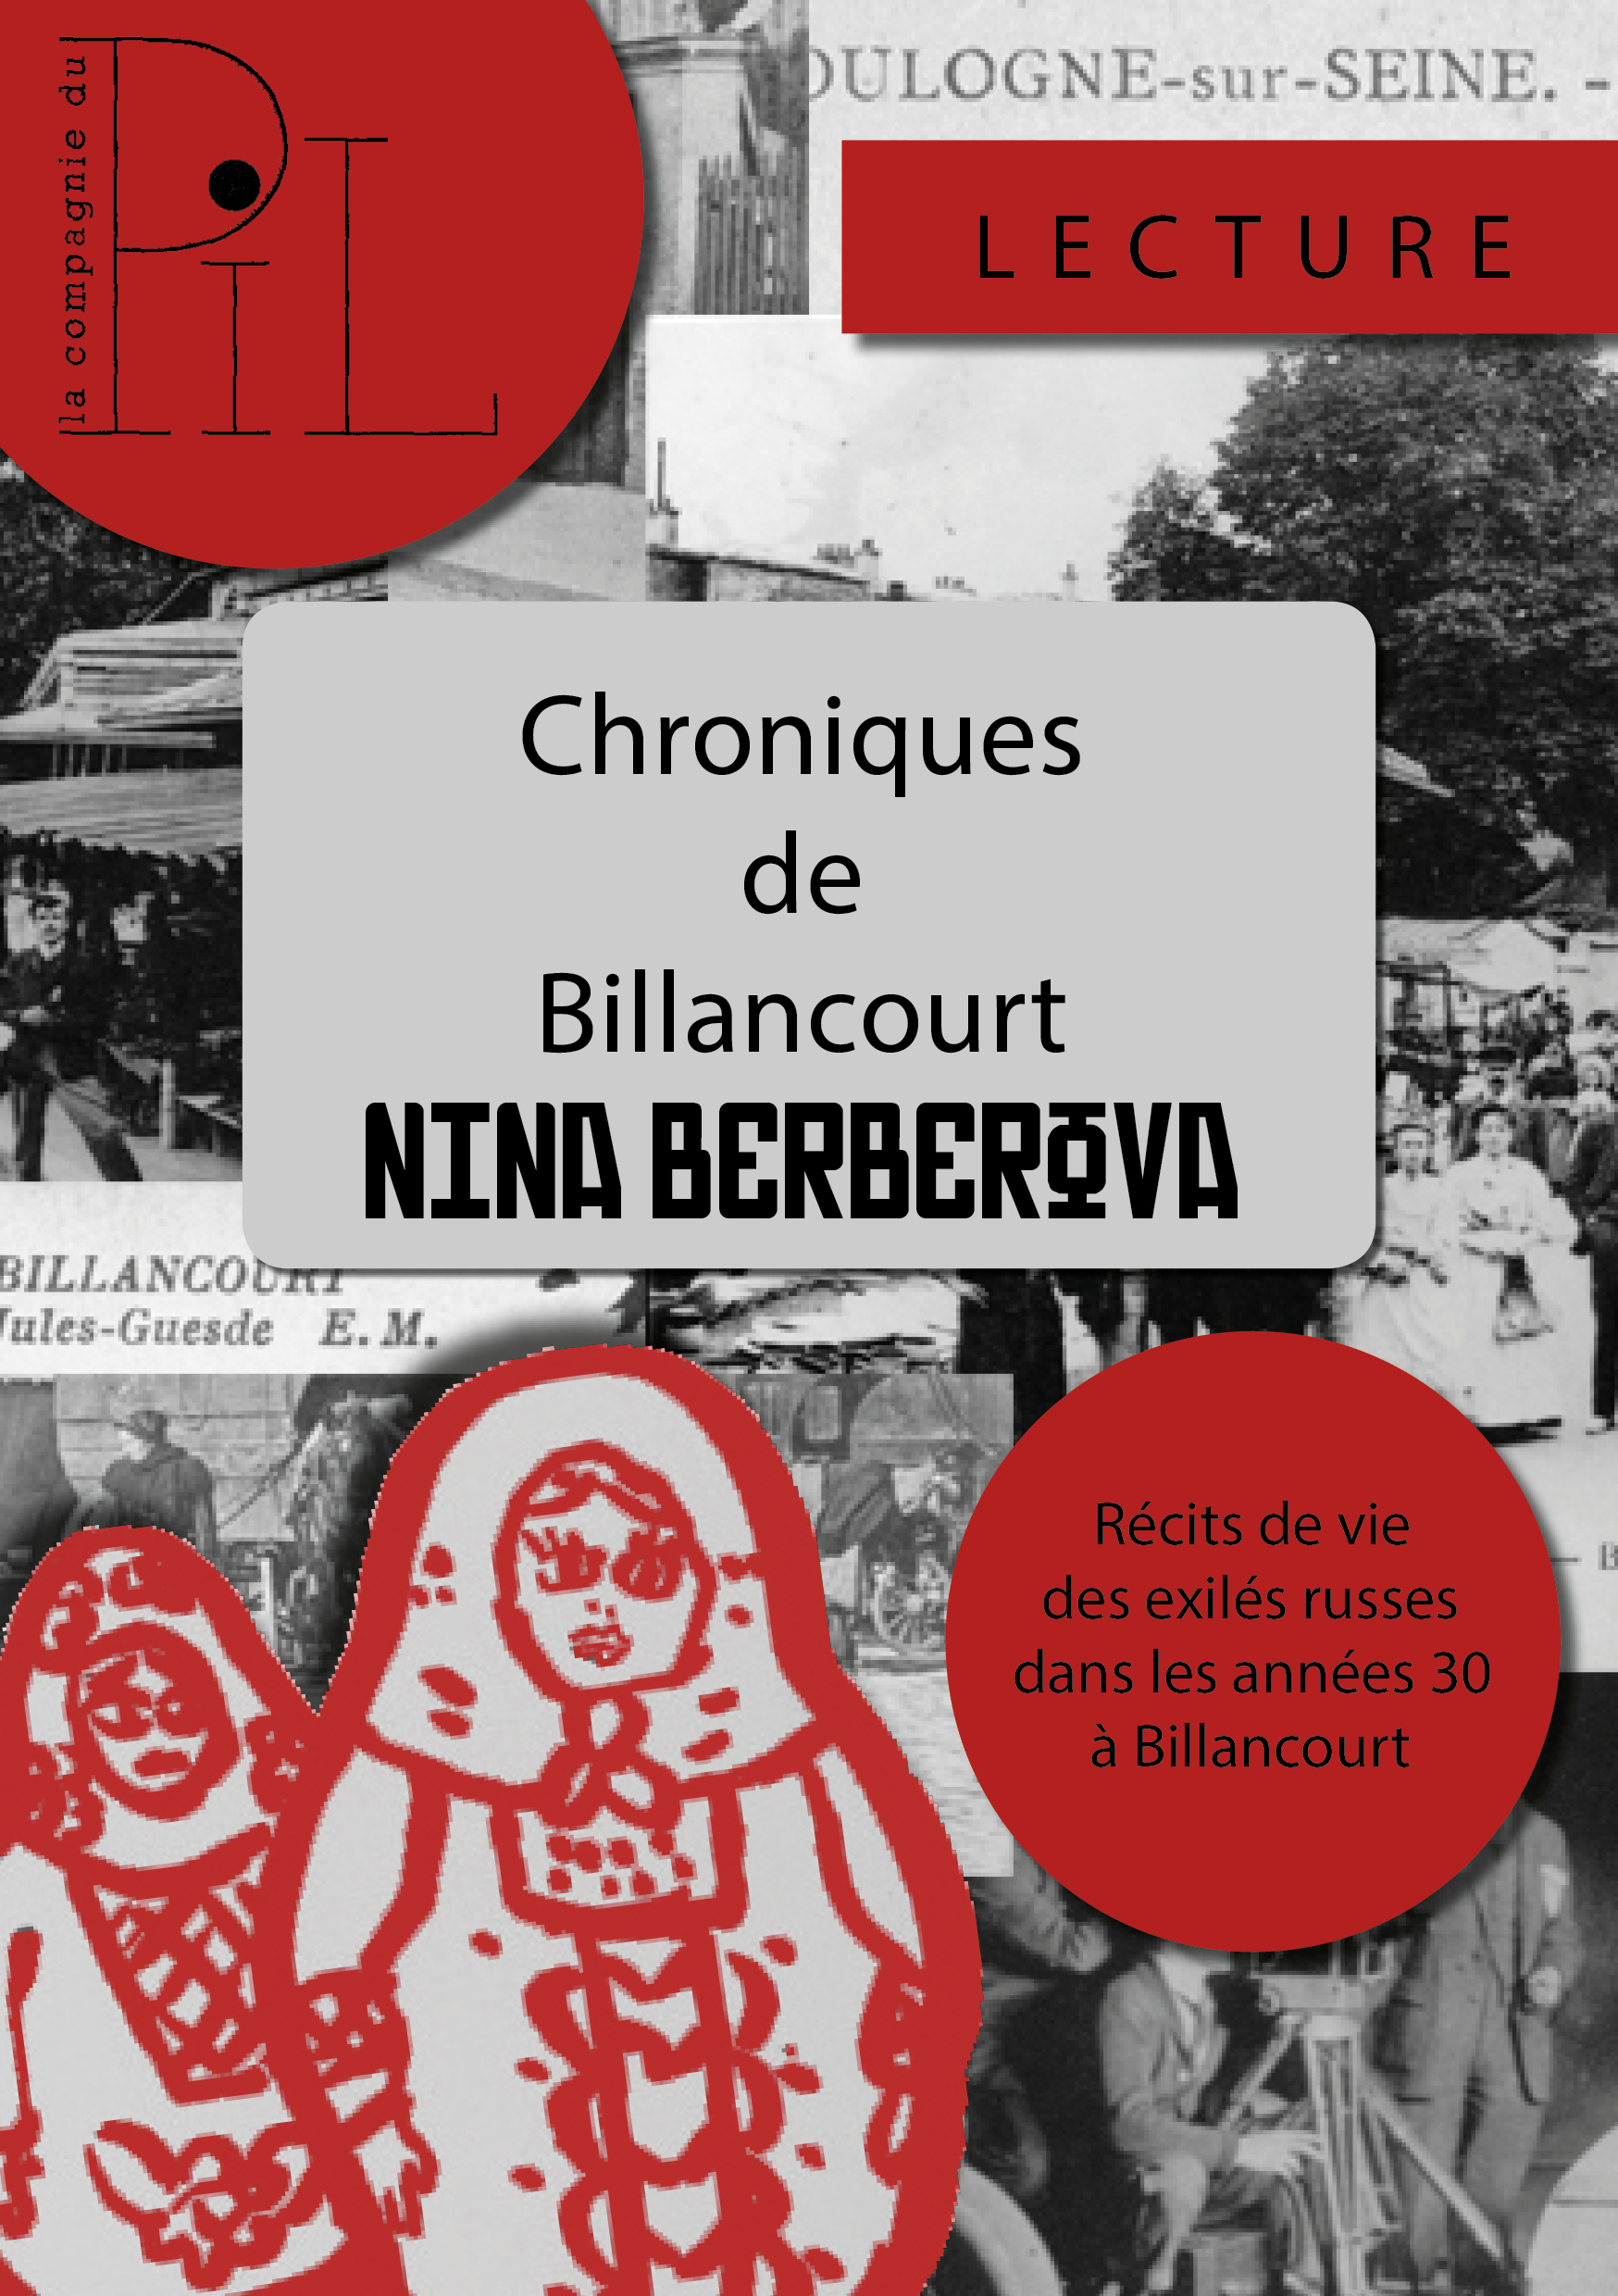 "Chroniques de Billancourt", La Compagnie du Pil